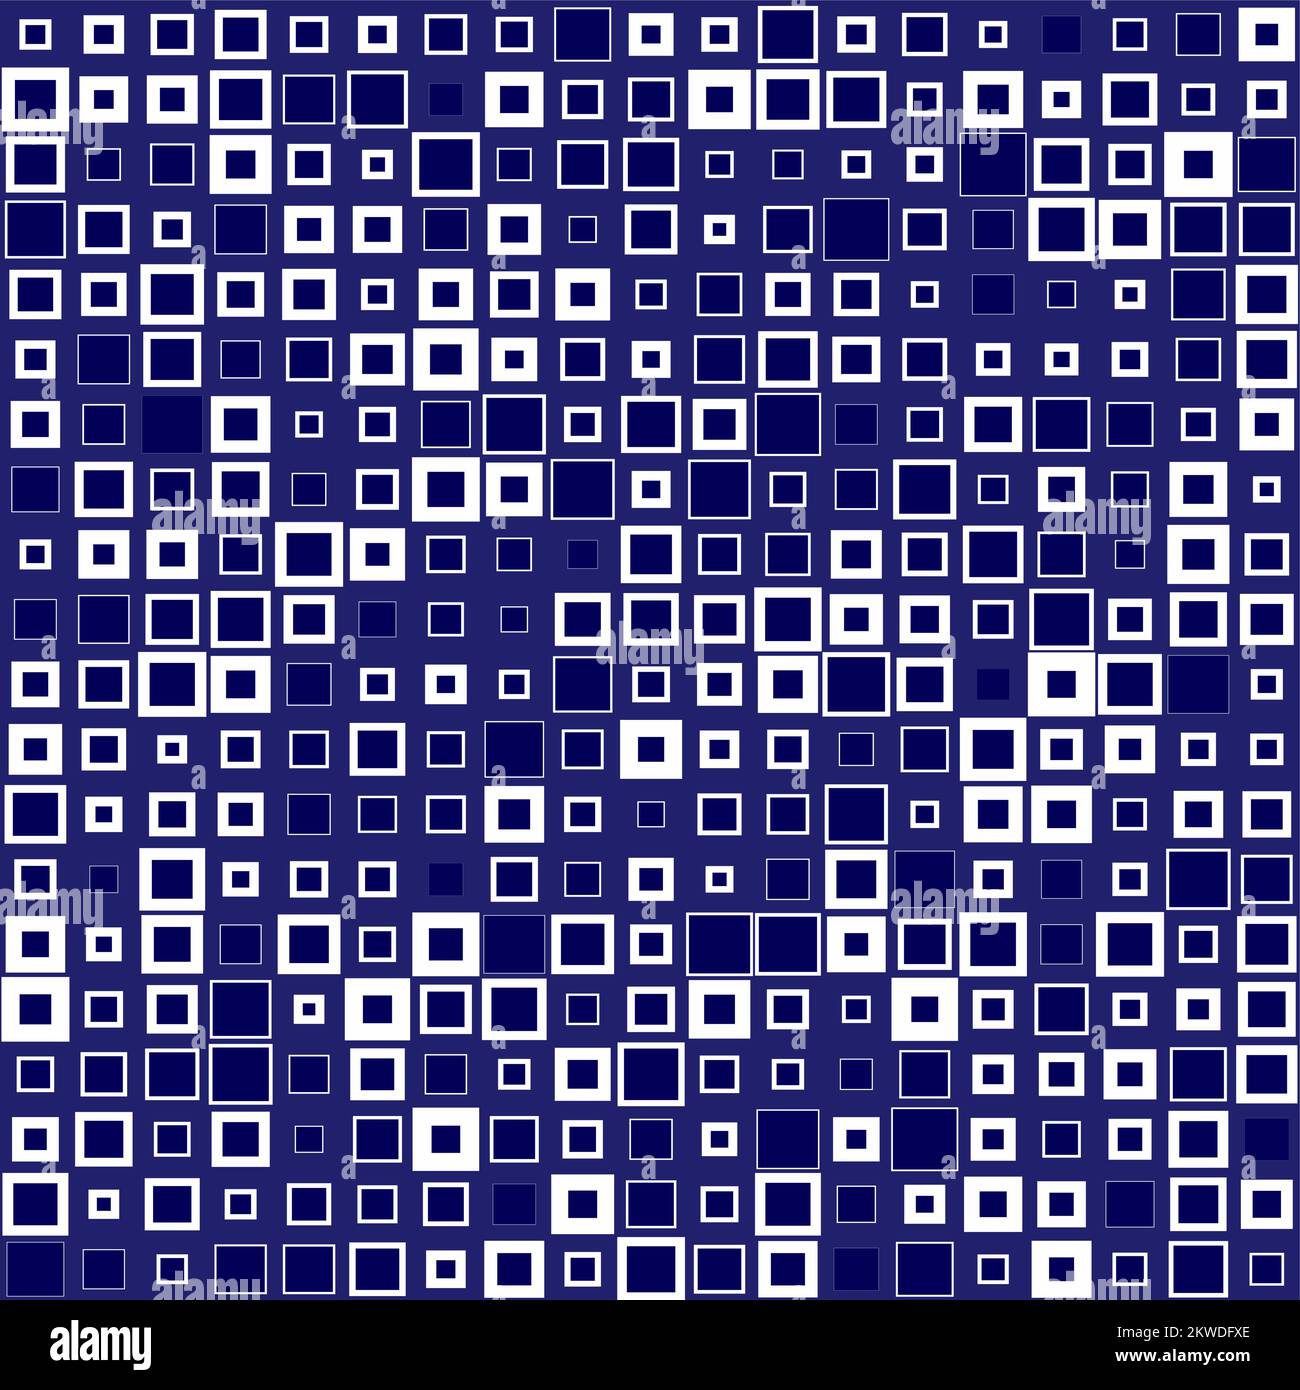 Fondo Abstract Mosaic Pixel azul con cuadrados de diferente escala y color en azul oscuro Ilustración del Vector